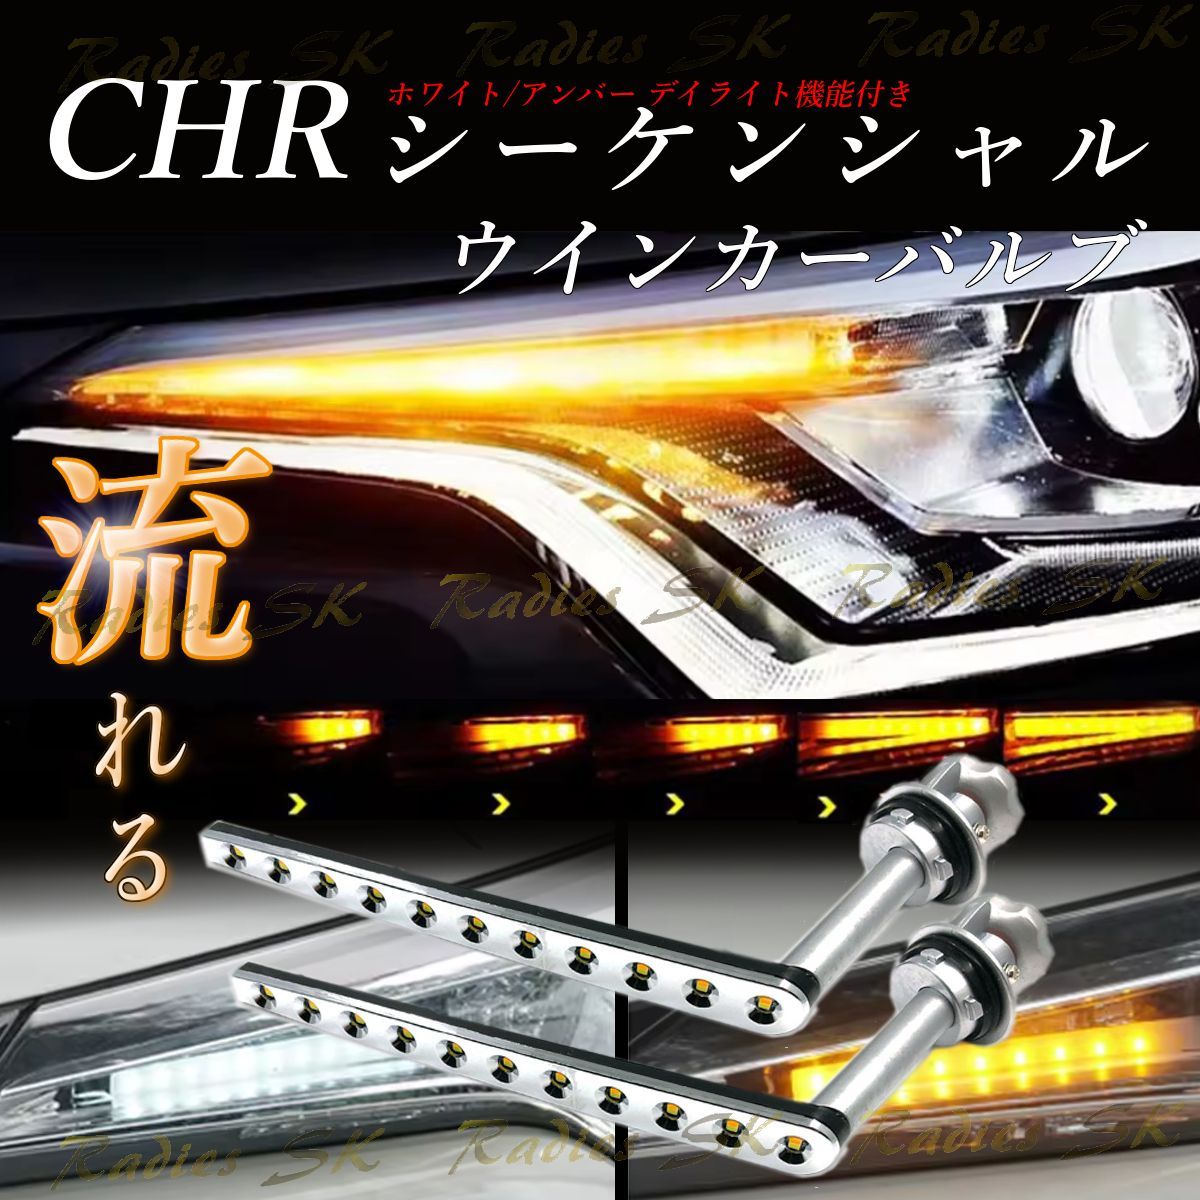 CHR シーケンシャルウインカー ZYX10 NGX50 ウインカー デイライト LED トヨタ T20 S25 オレンジ アンバー 抵抗器 1年保証 2本 Radies SK